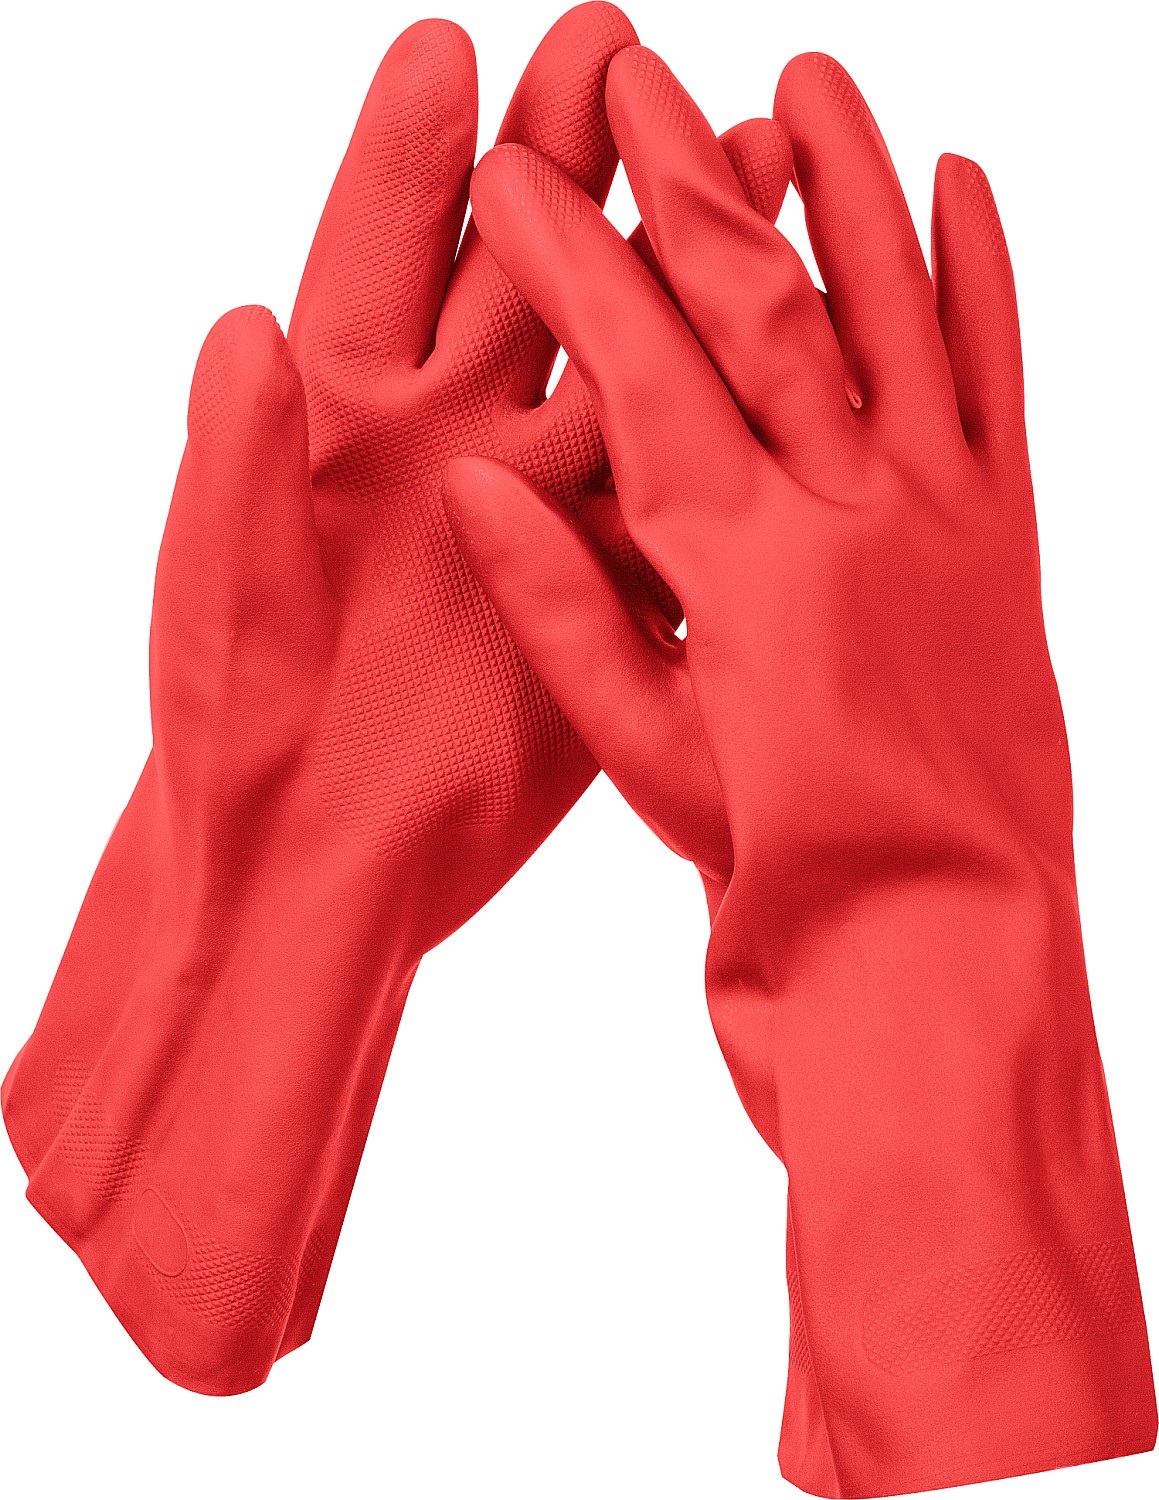 ЗУБР ЛАТЕКС+ перчатки латексные хозяйственно-бытовые, размер XL